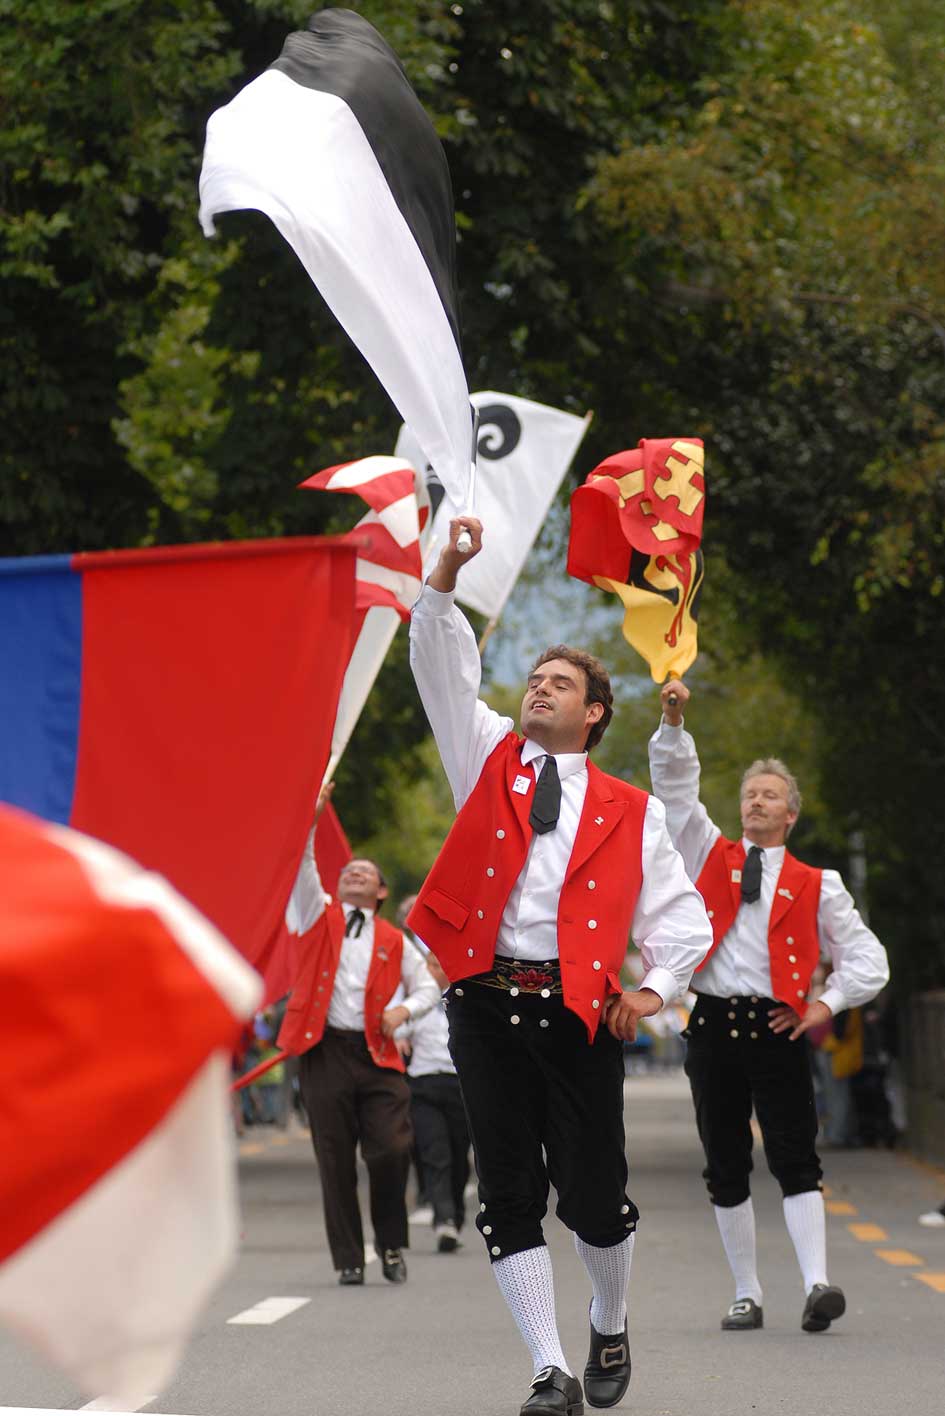 Lanceurs de drapeaux au cortège de la fête d’Unspunnen en 2006 © Steiner/Verein Schweizerisches Trachten- und Alphirtenfest Unspunnen